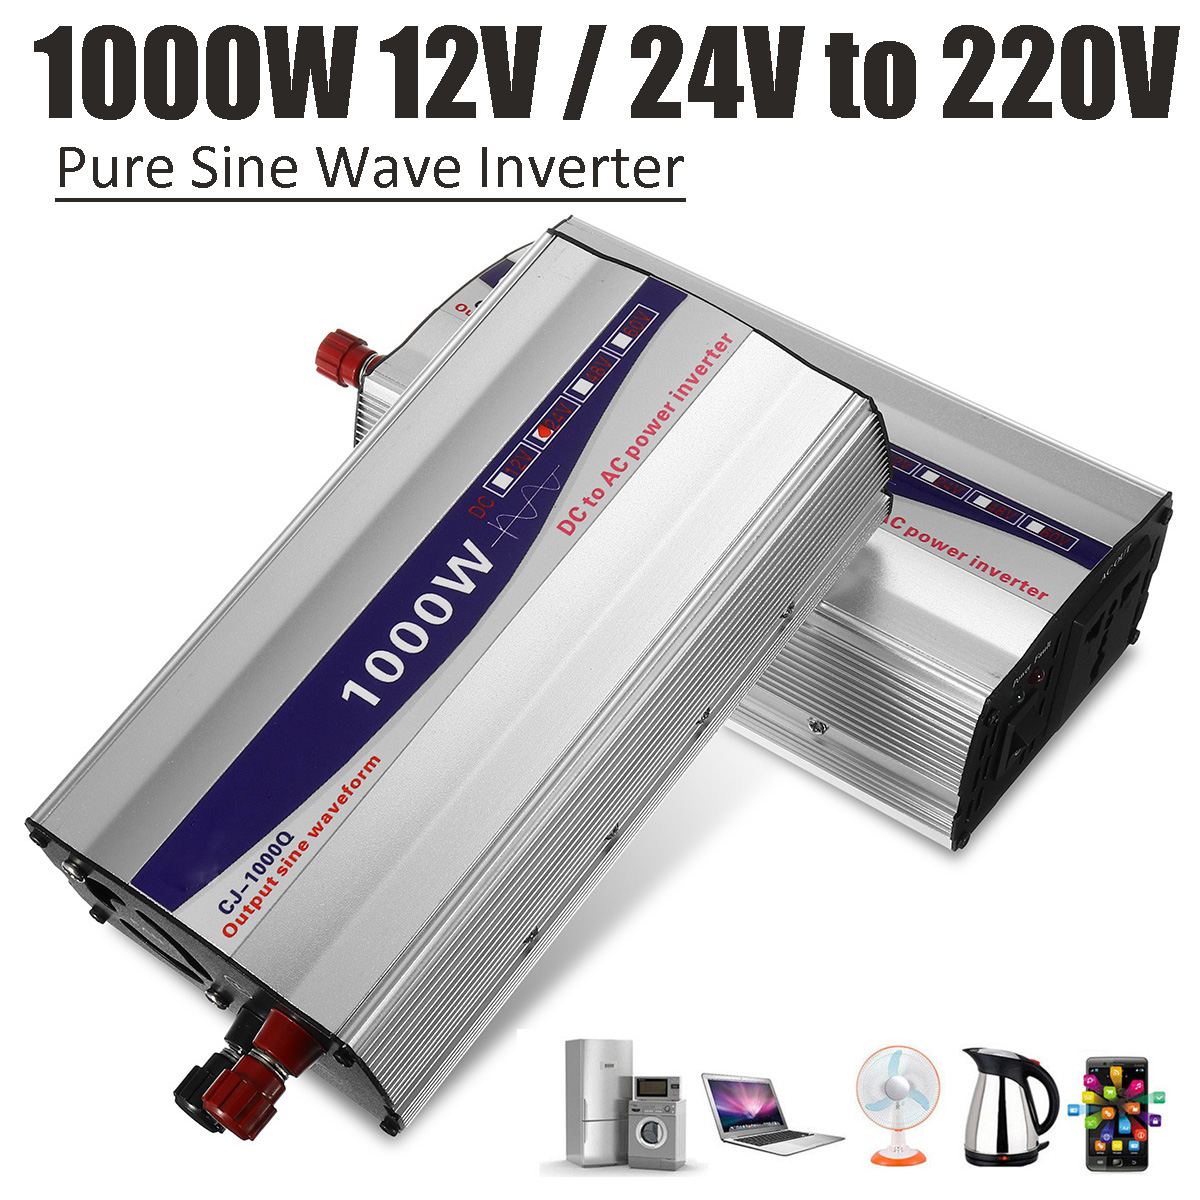 1000W-Peak-12V--24V-to-220V-Pure-Sine-Wave-Inverter-Power-Inverter-Voltage-Converter-1260760-1